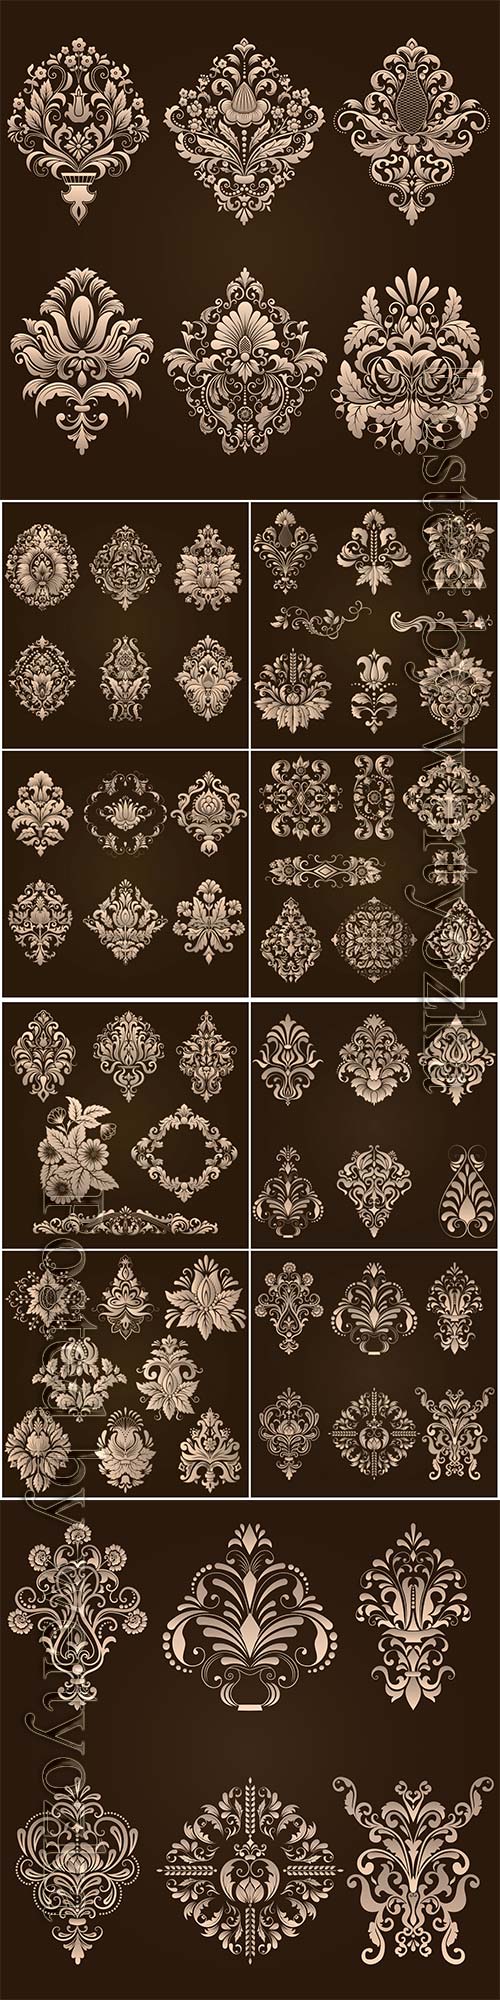 Vector set of damask ornamental elements